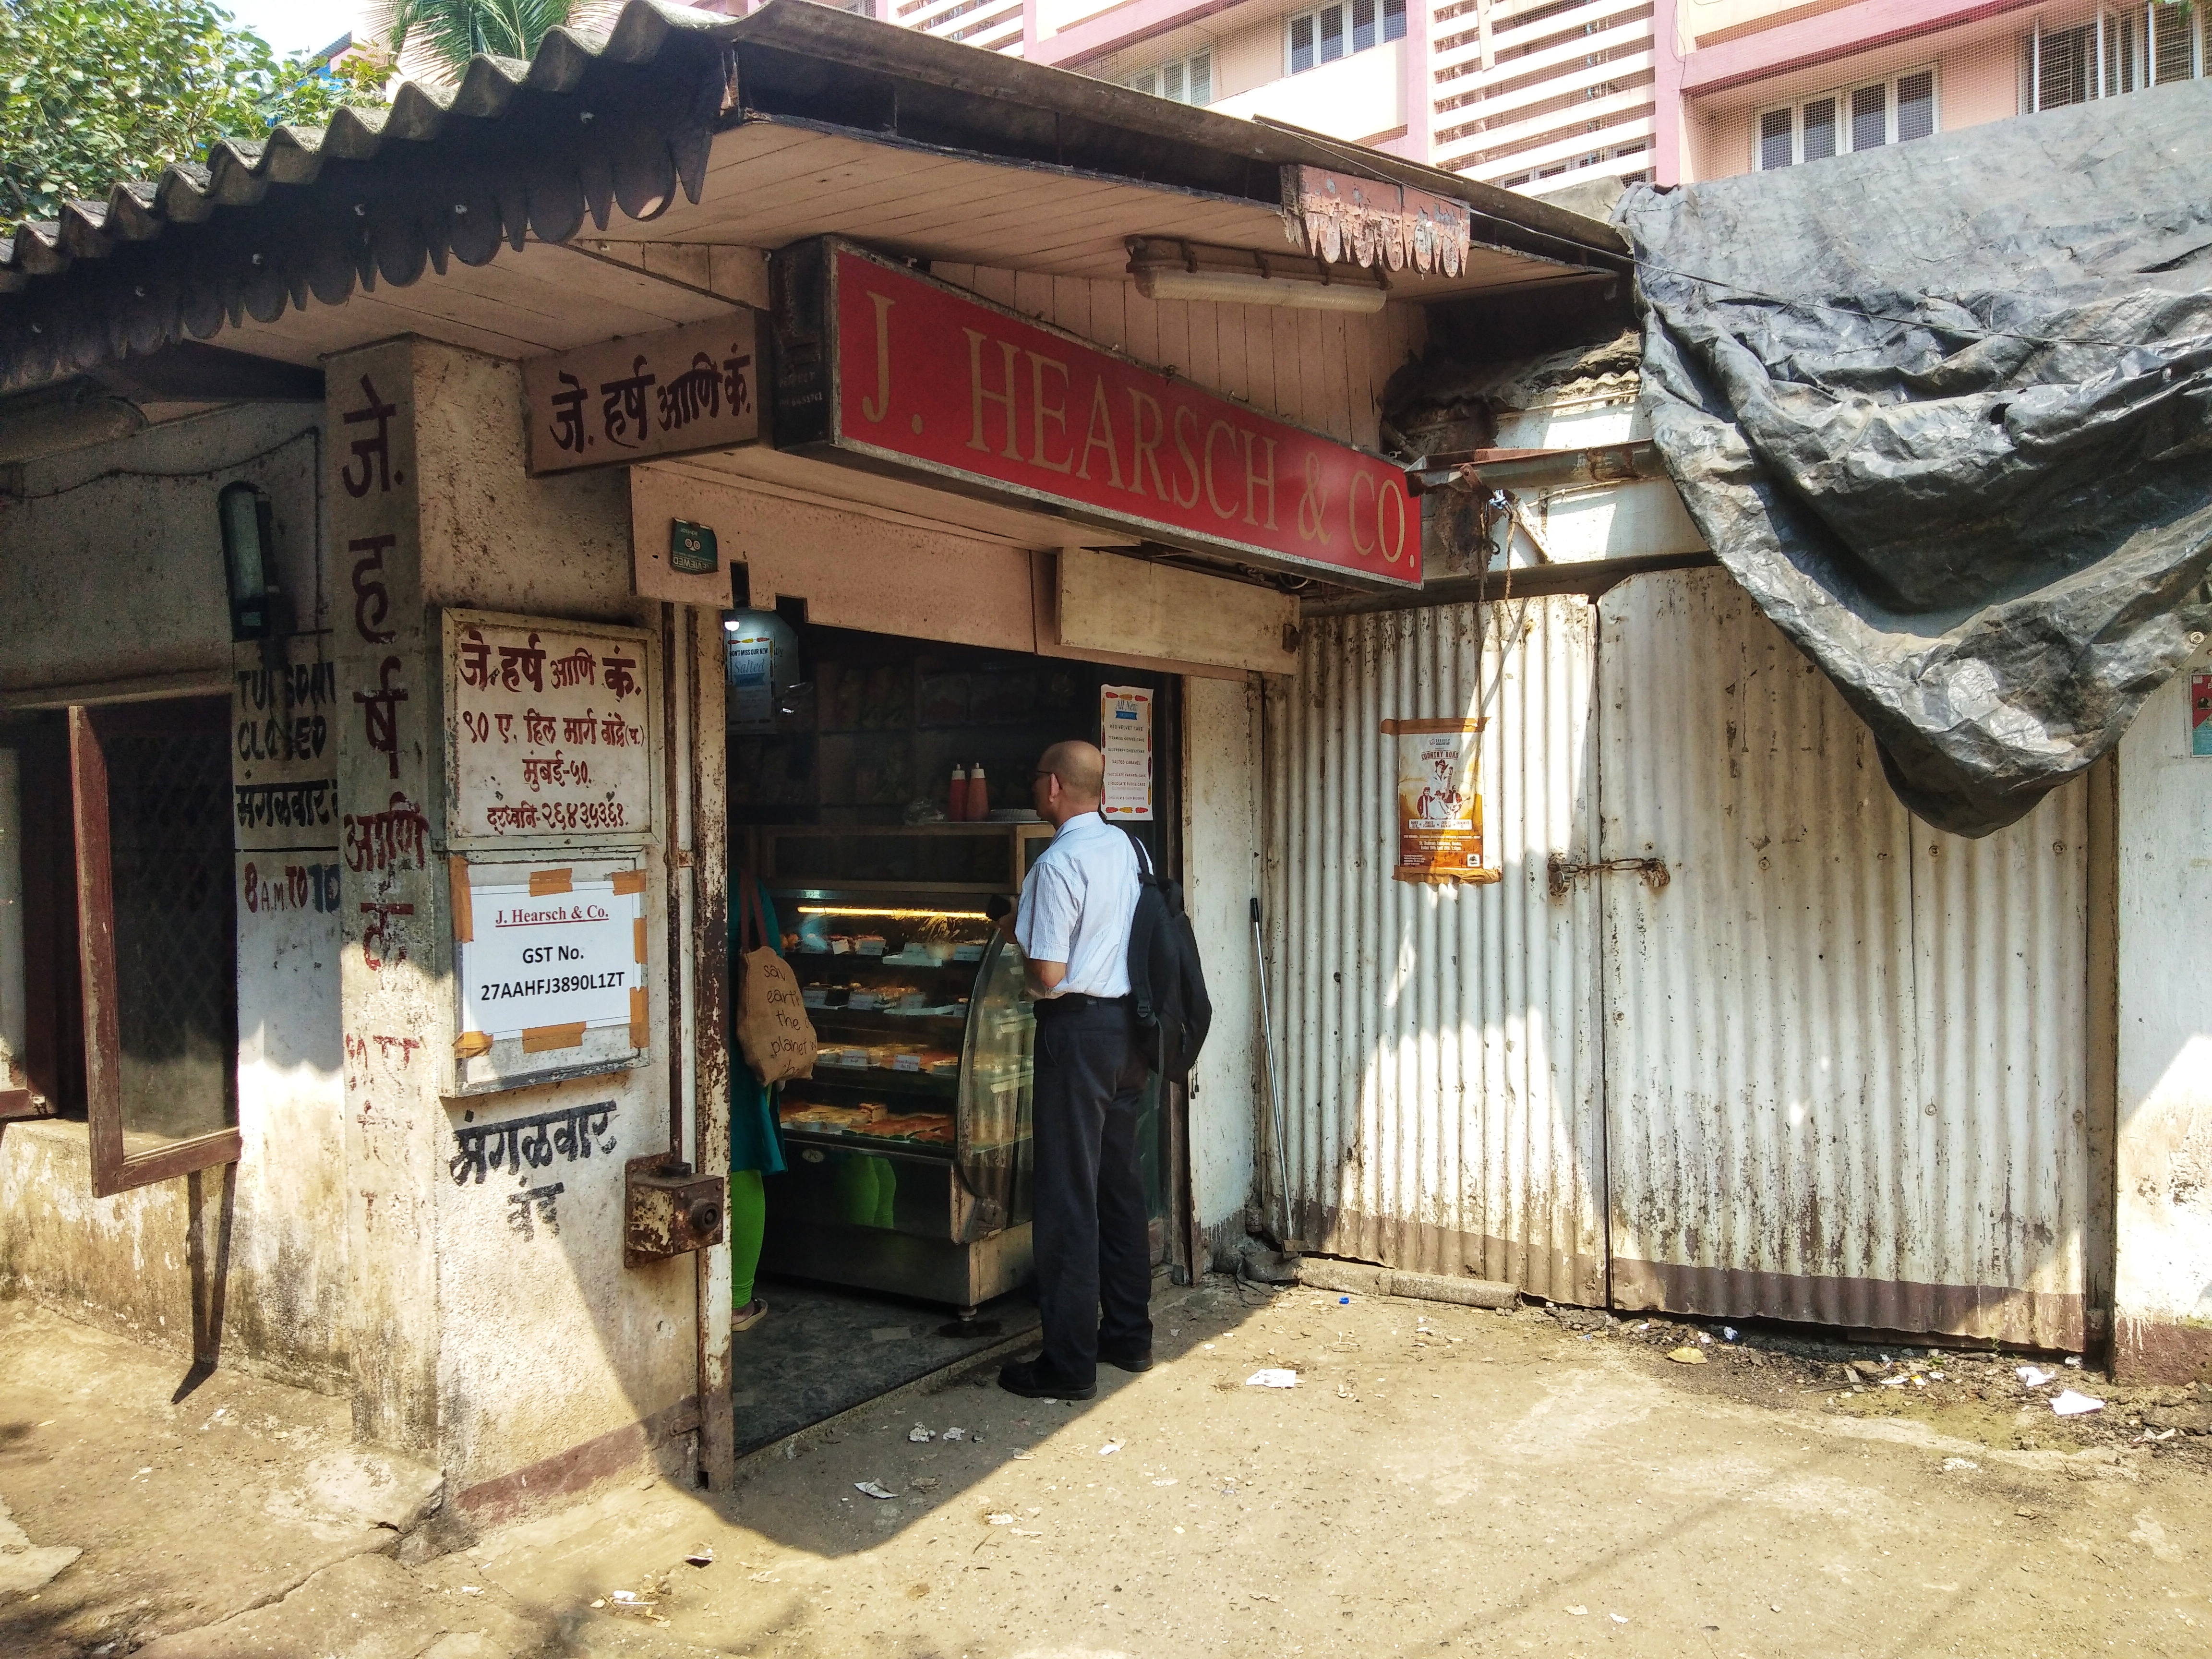 The Bombay Bakery Trail